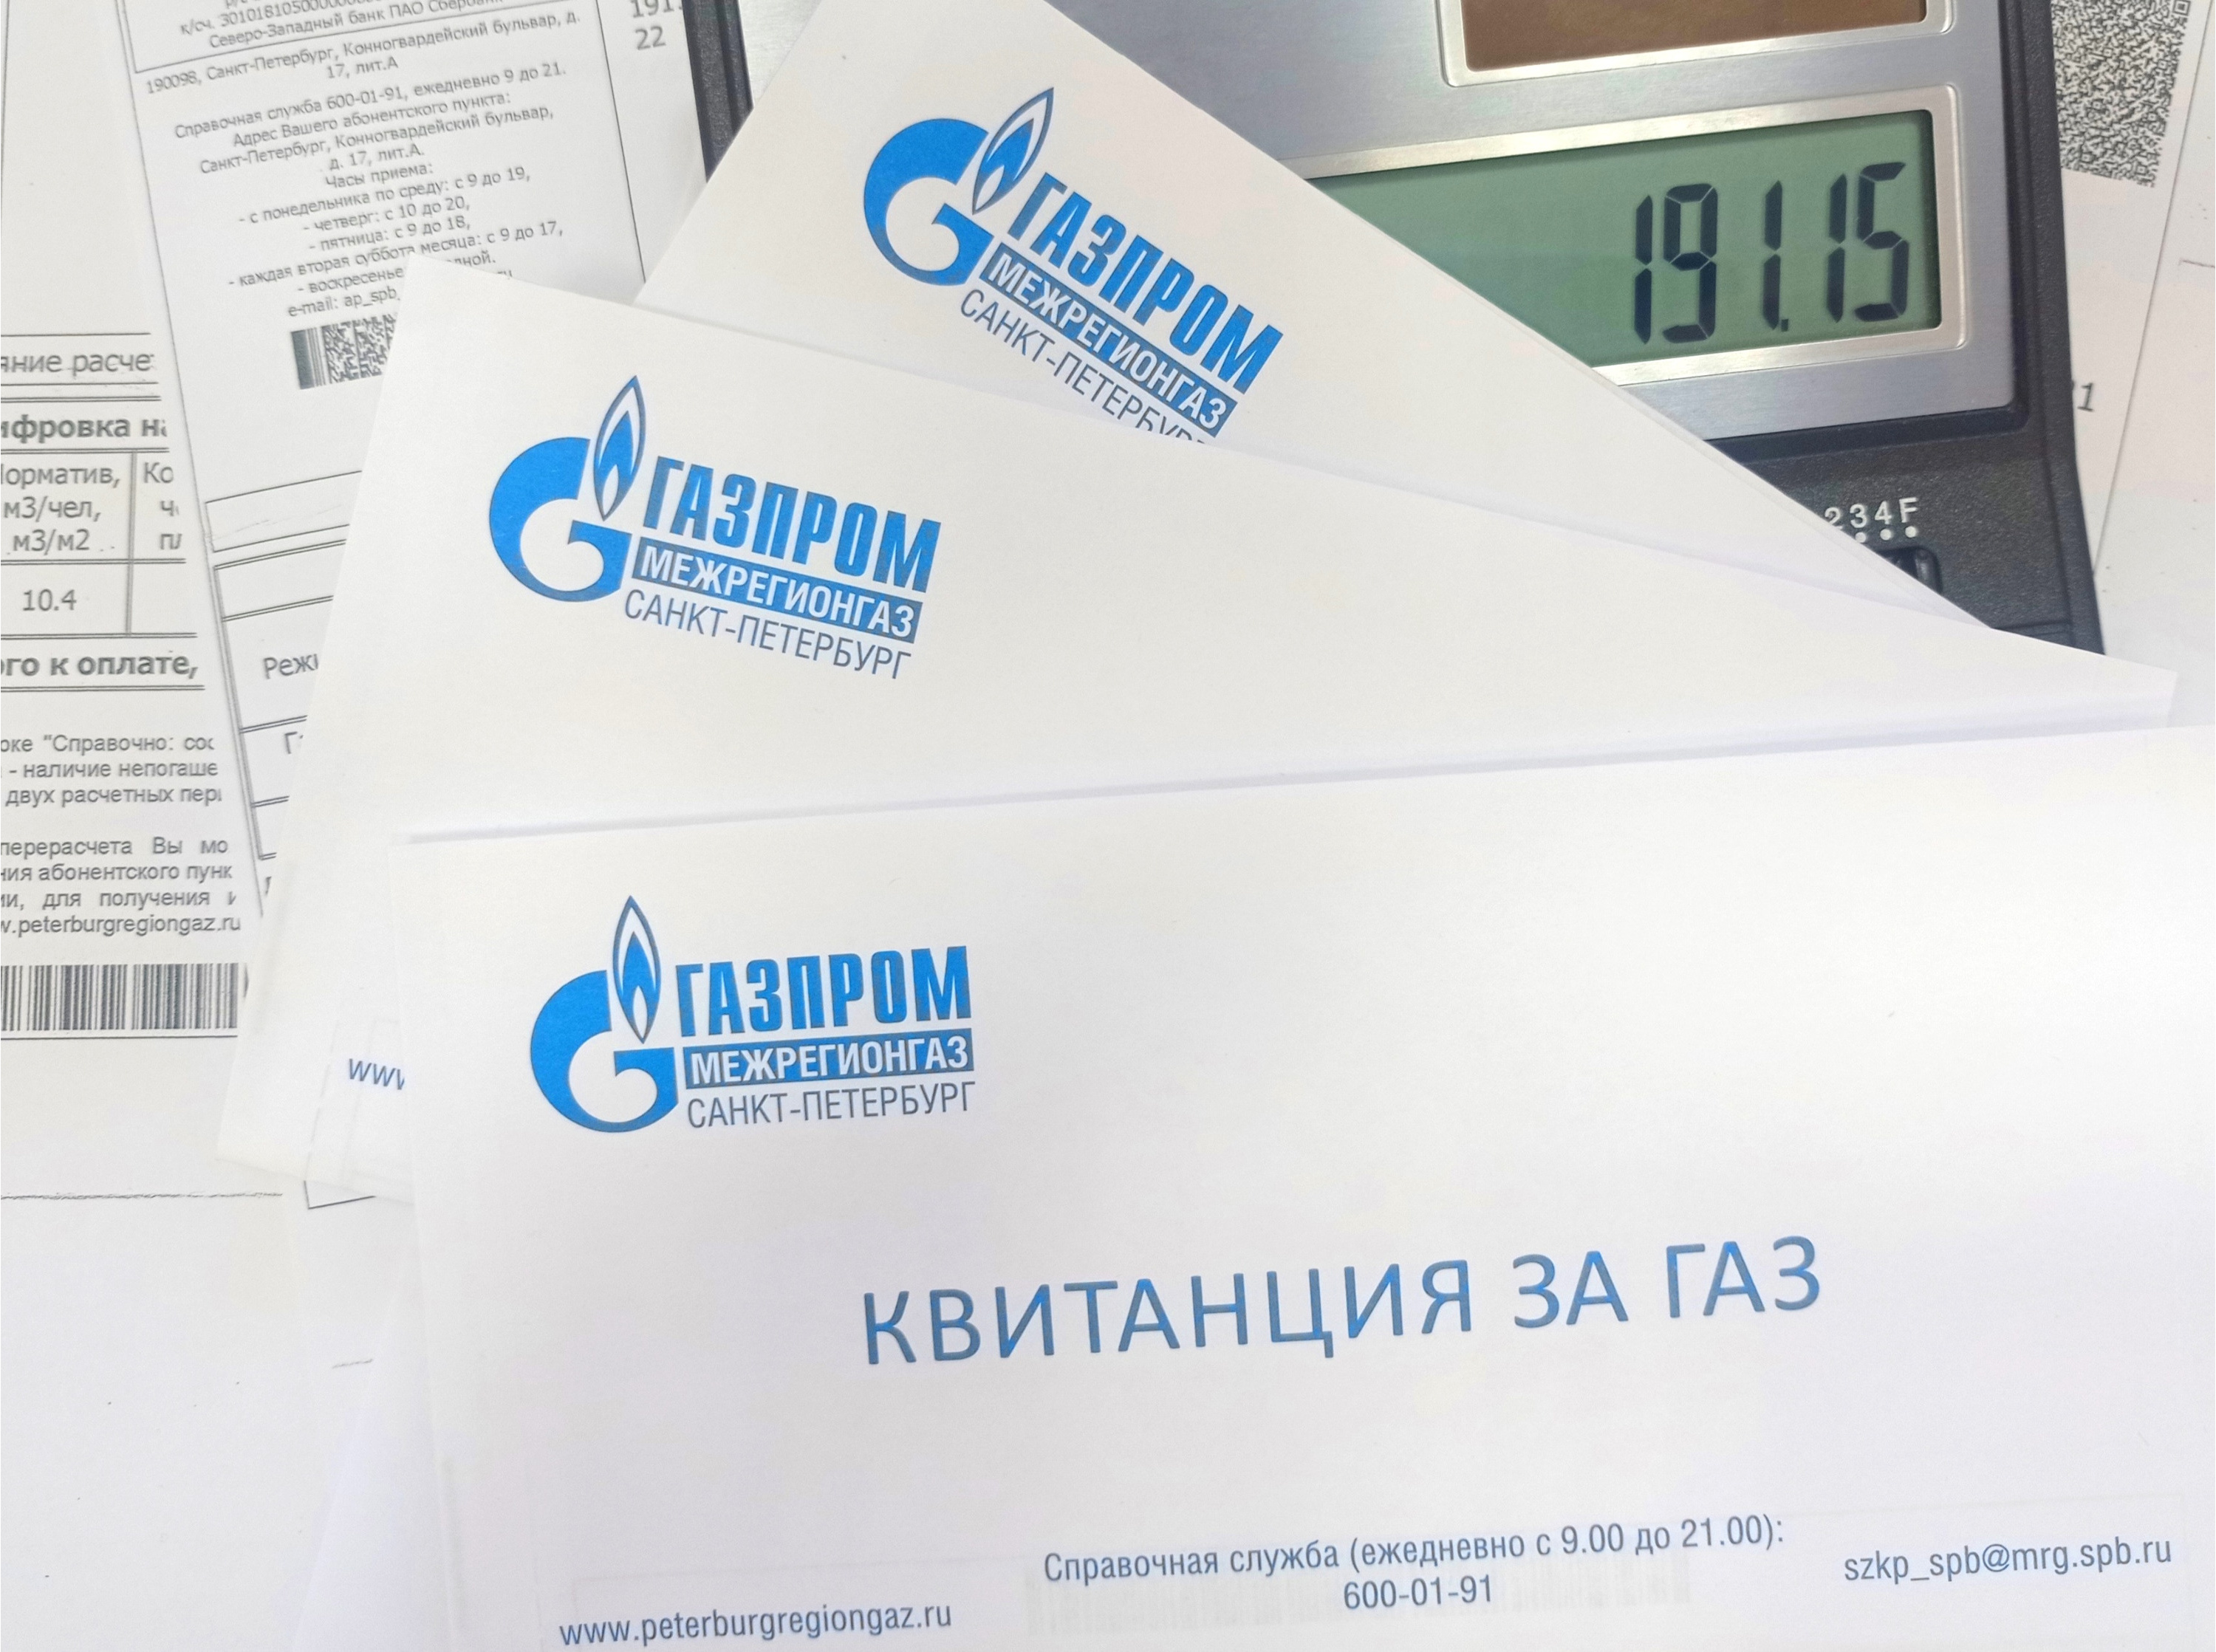 Peterburgregiongaz ru передать показания счетчика